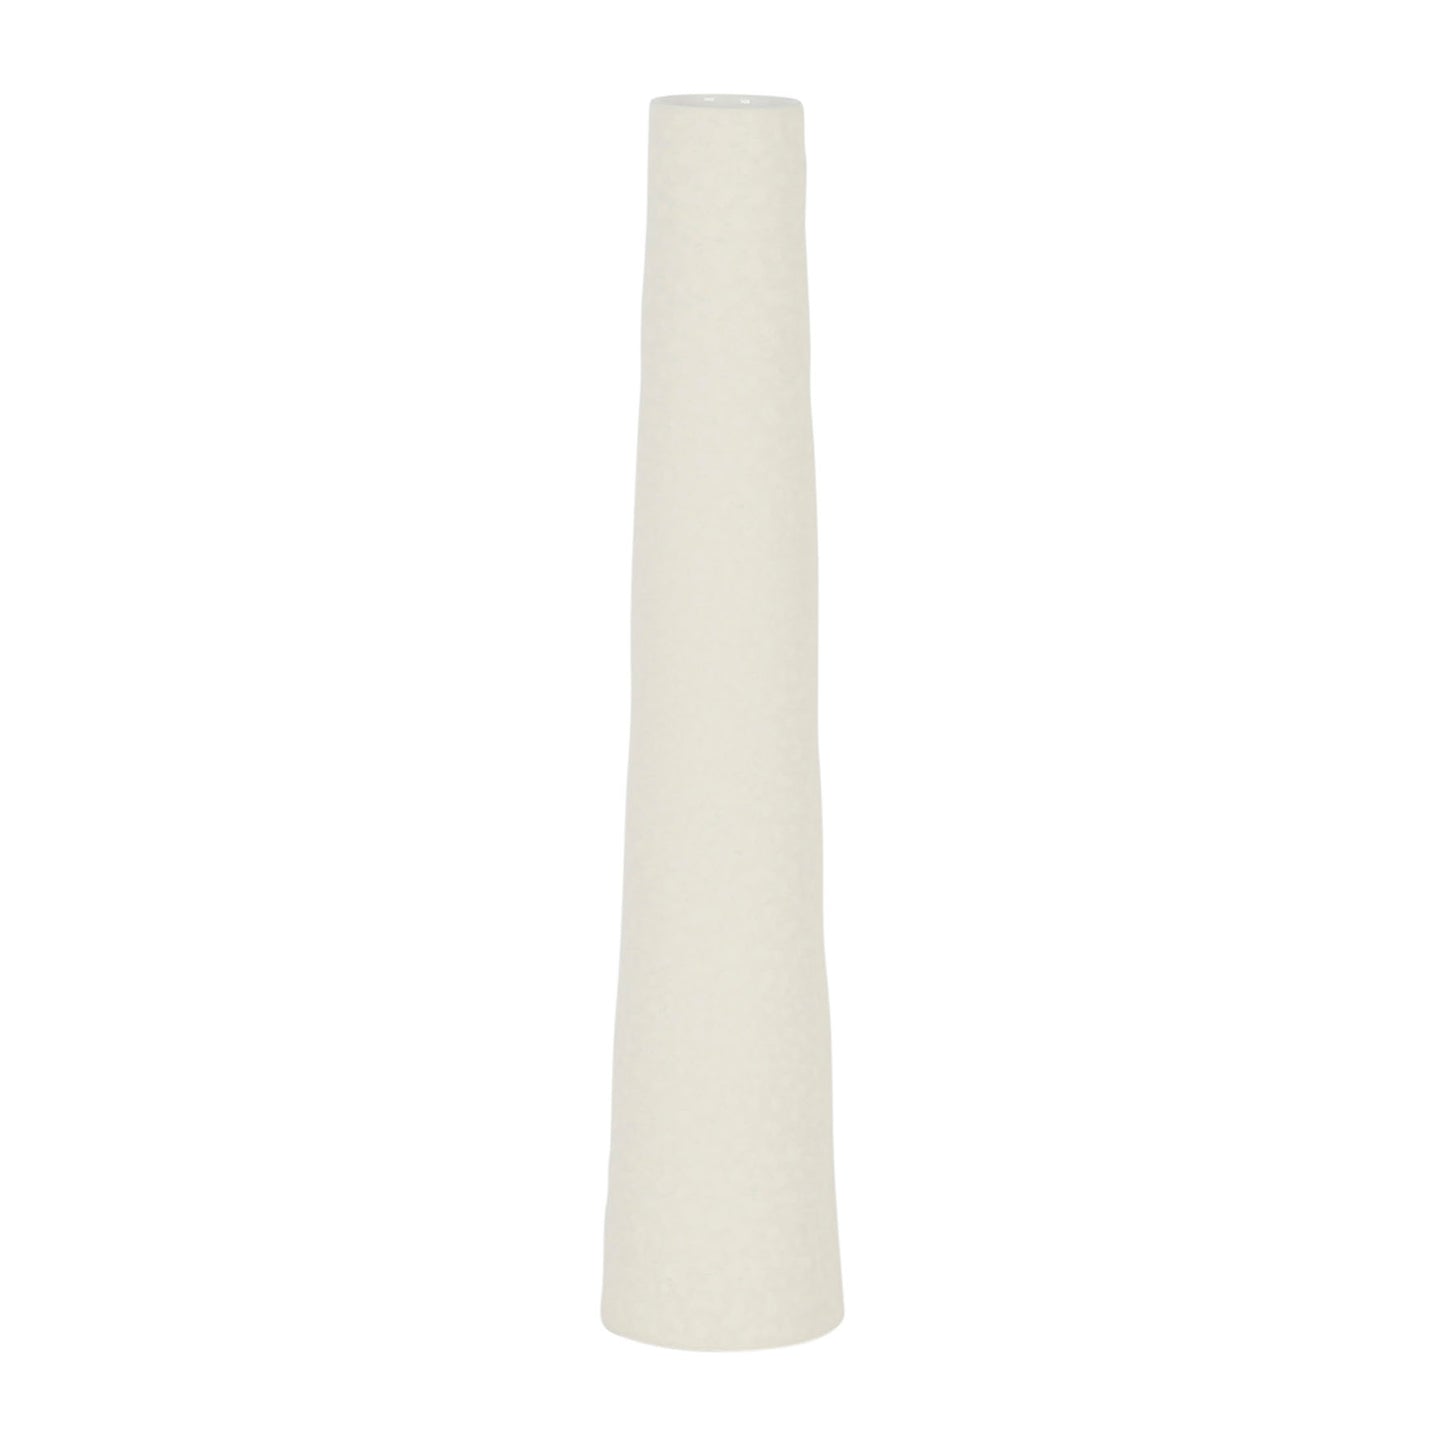 Tall white stoneware vase, 43cm